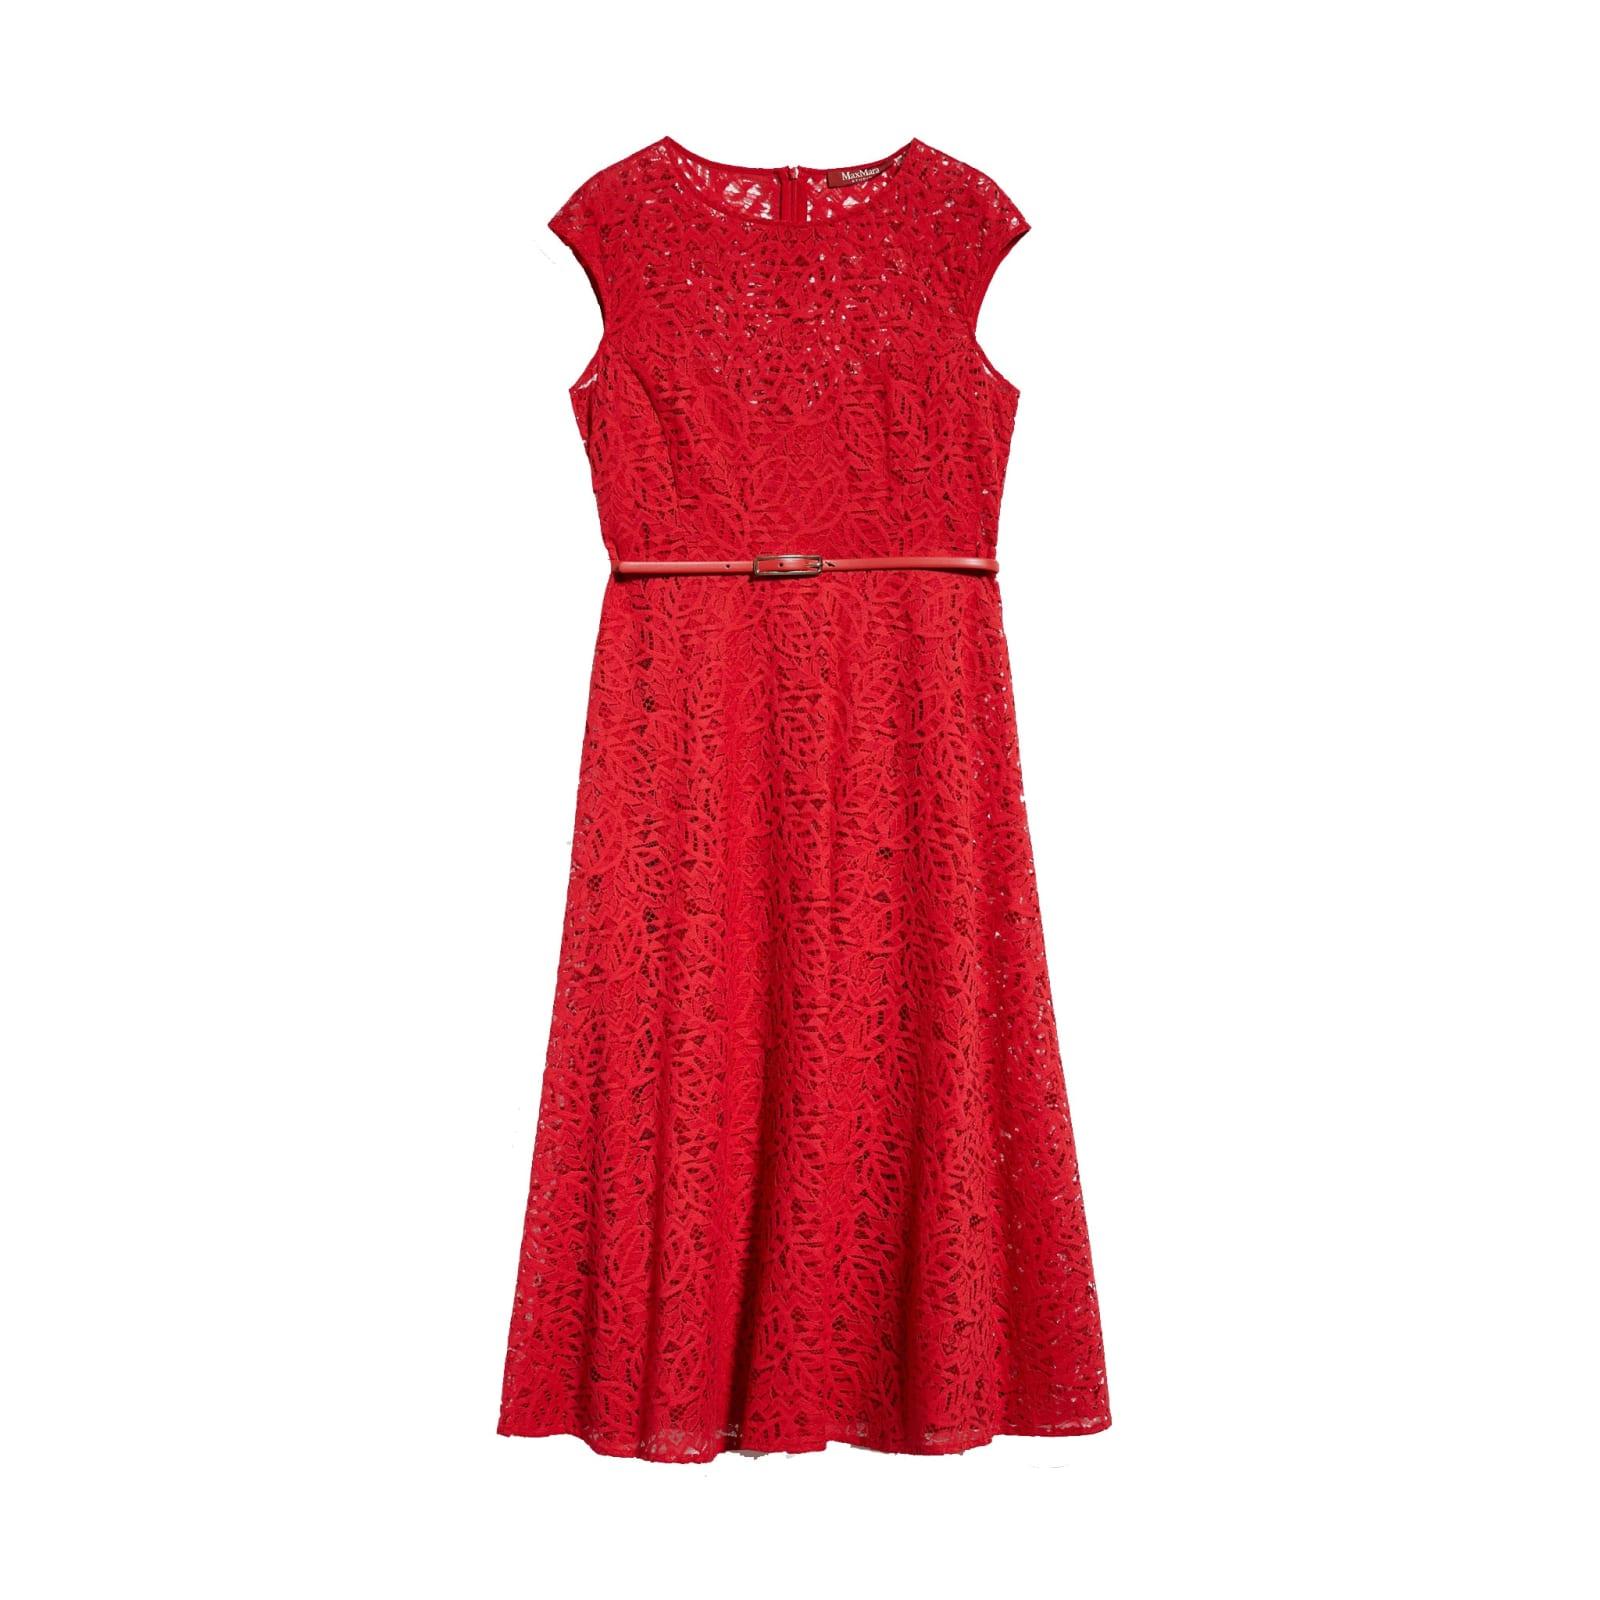 Max Mara Studio Pioggia Lace Dress in Red | Lyst